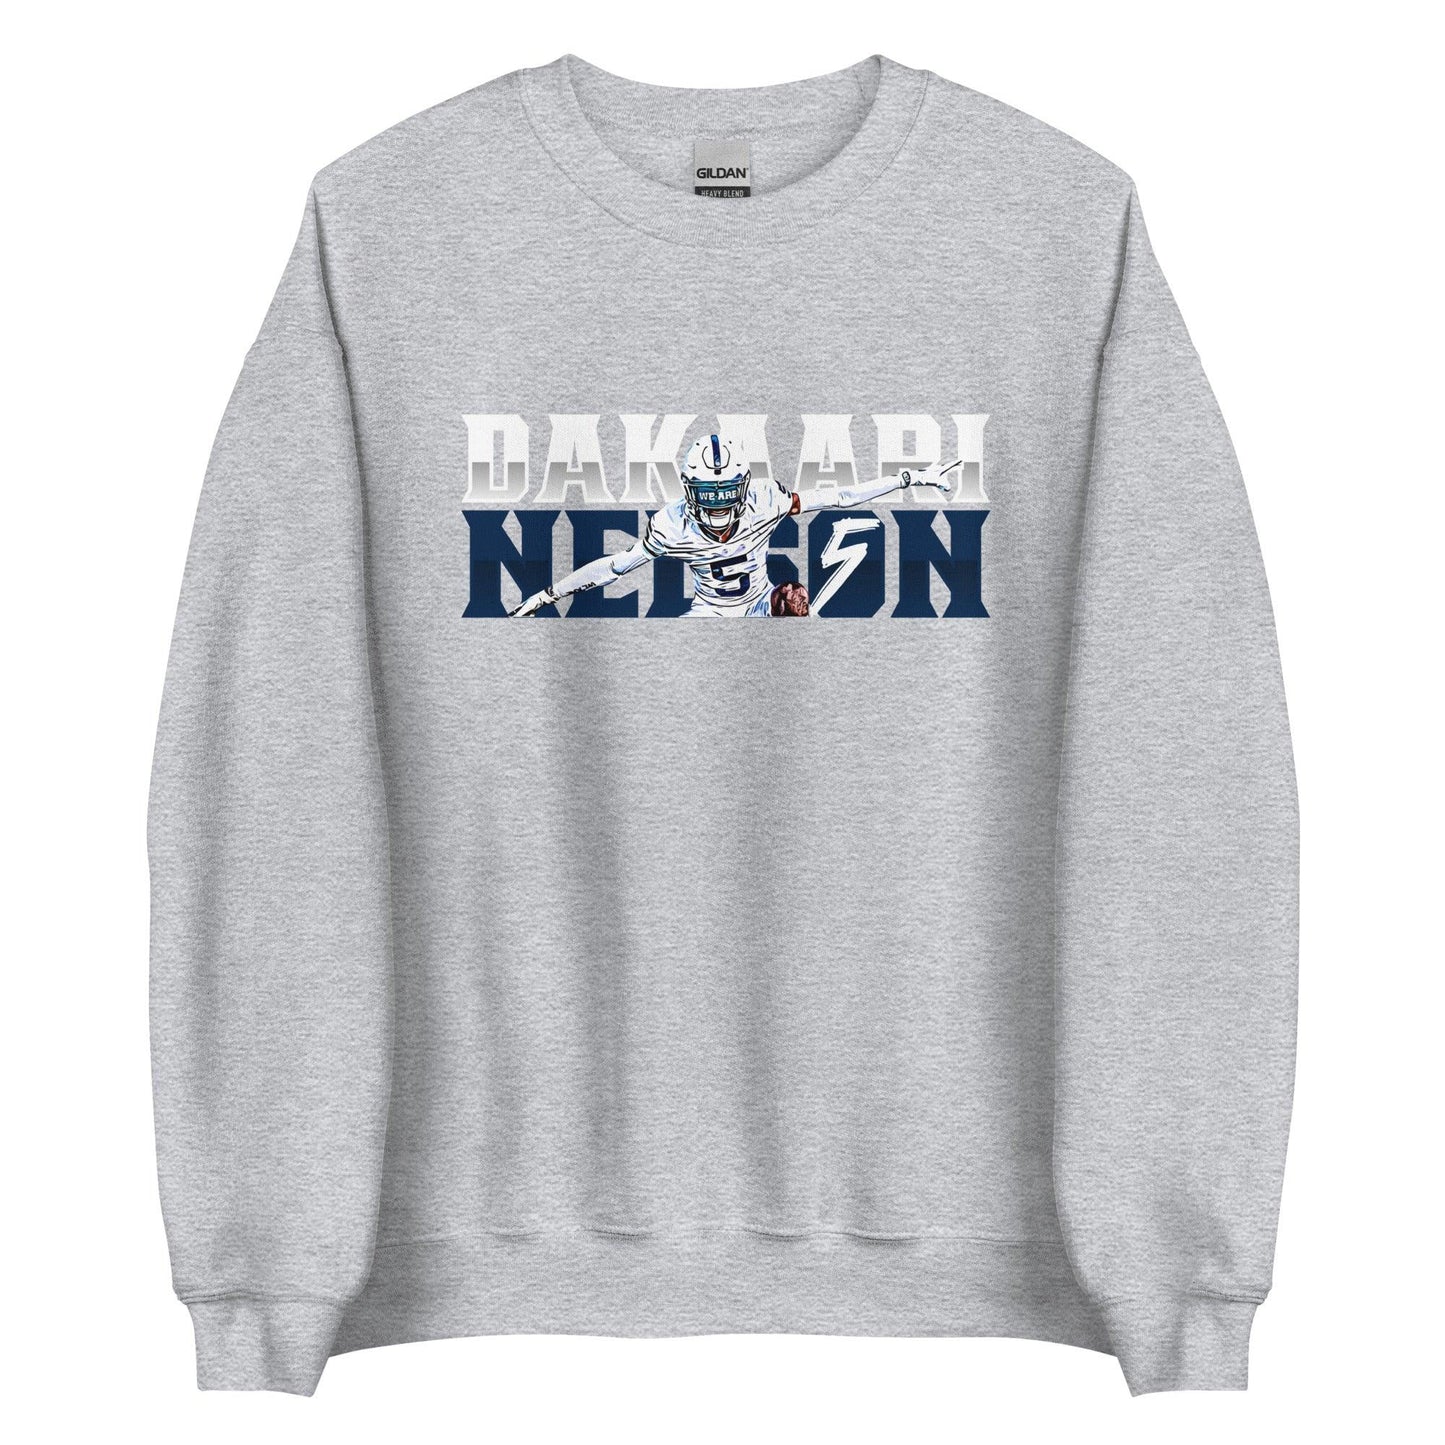 Dakaari Nelson "Gameday" Sweatshirt - Fan Arch